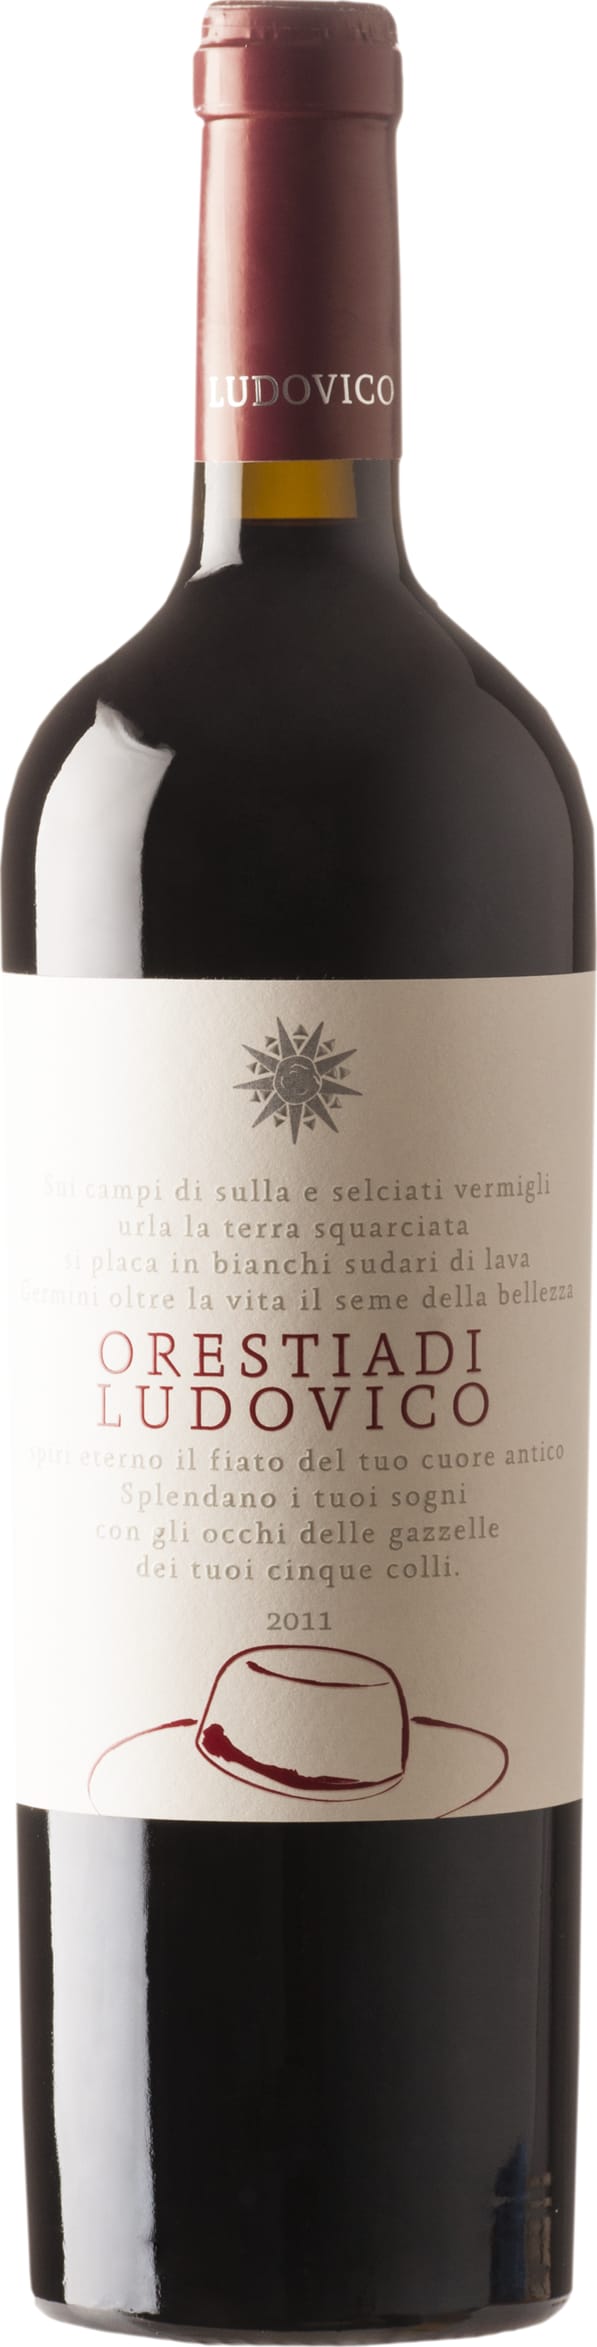 Tenute Orestiadi - Tenute Orestiadi Ludovico Rosso 2019 75cl - Buy Tenute Orestiadi - Tenute Orestiadi Wines from GREAT WINES DIRECT wine shop